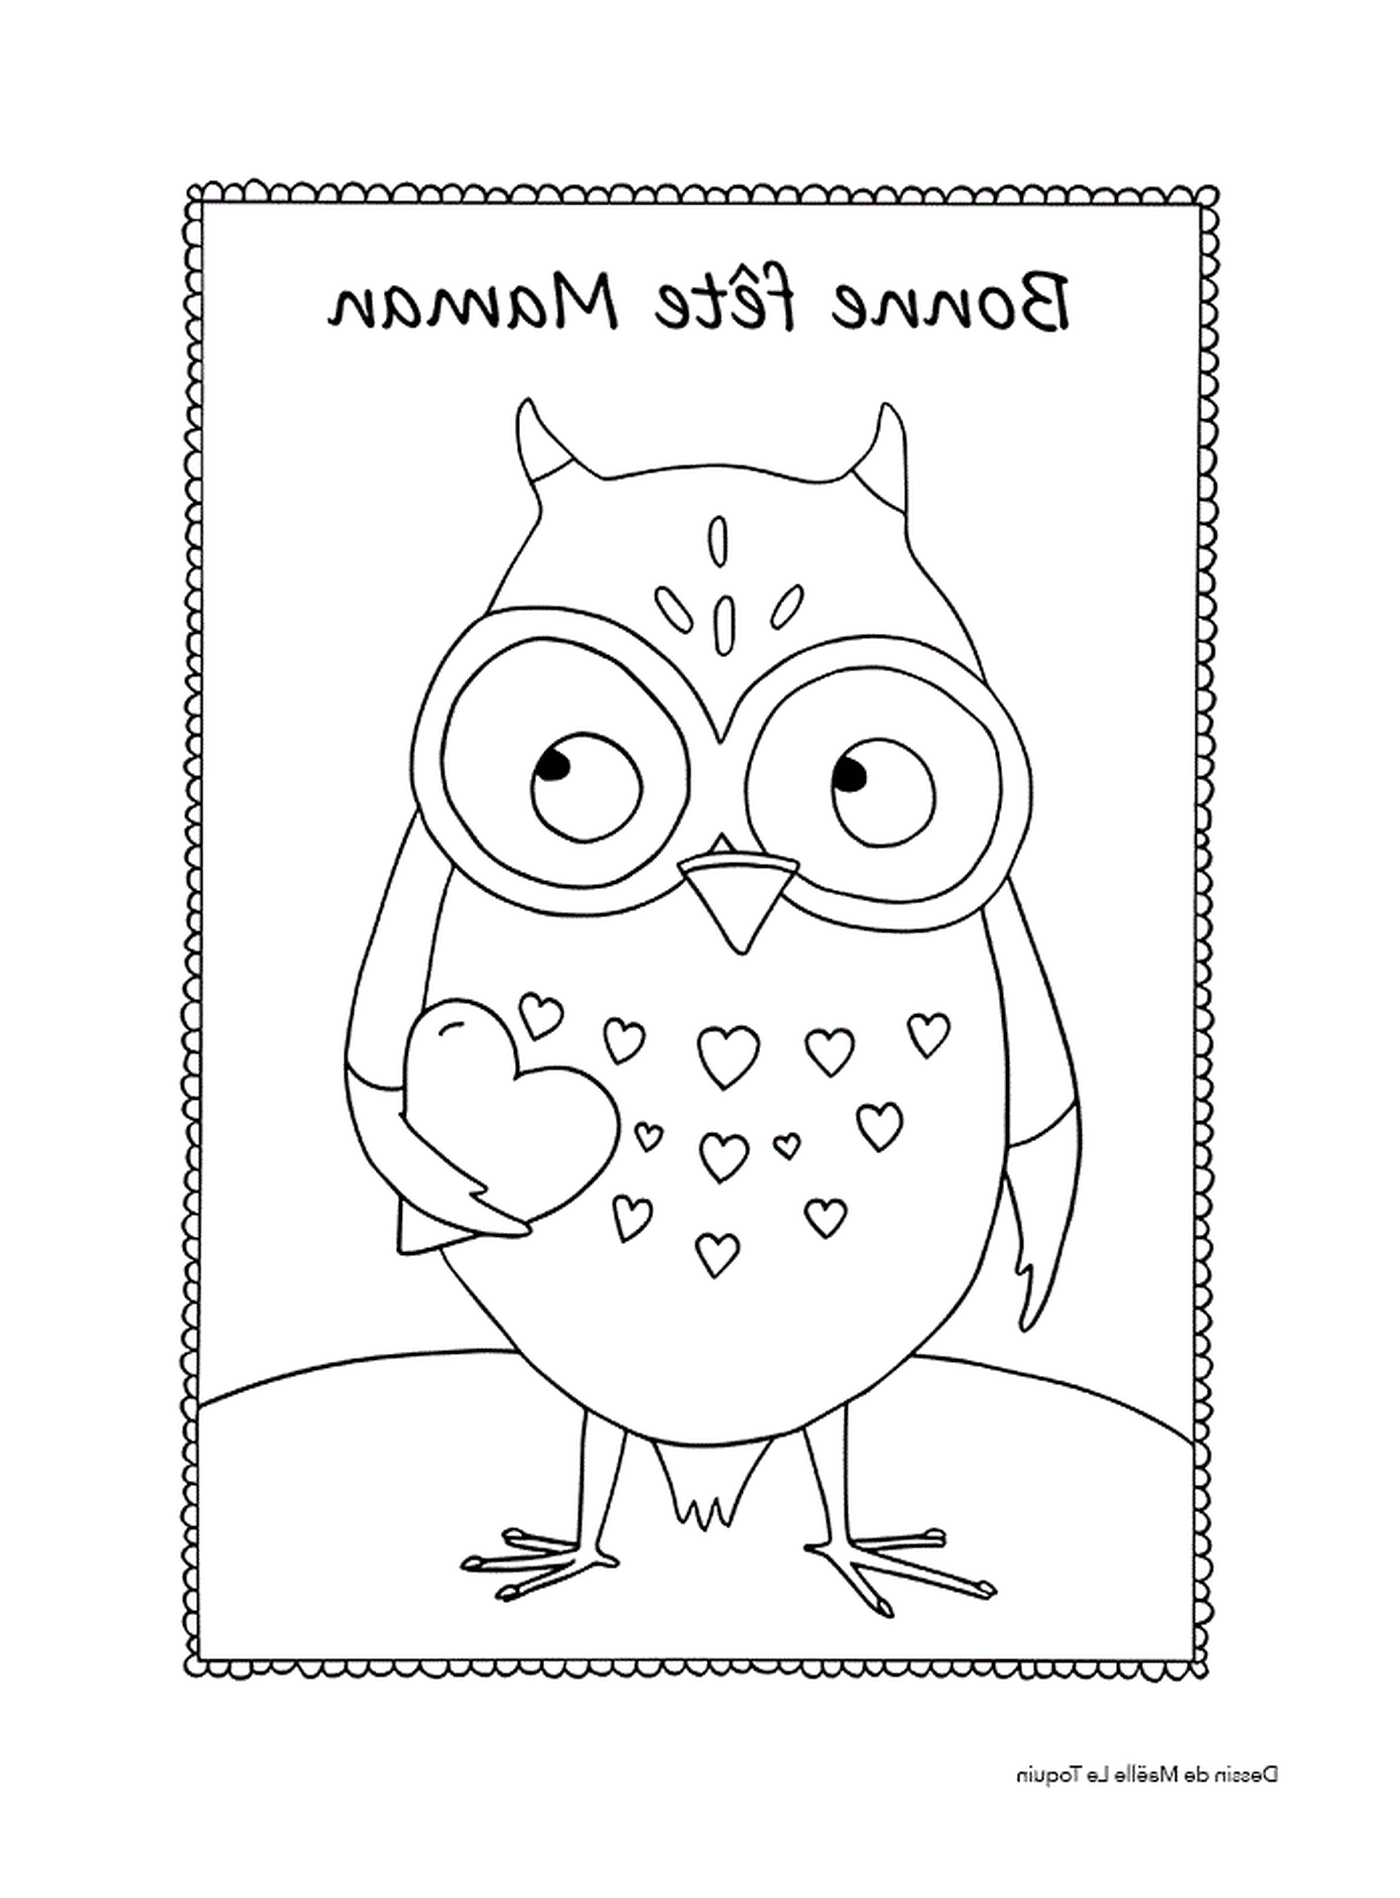  An owl holding a heart 